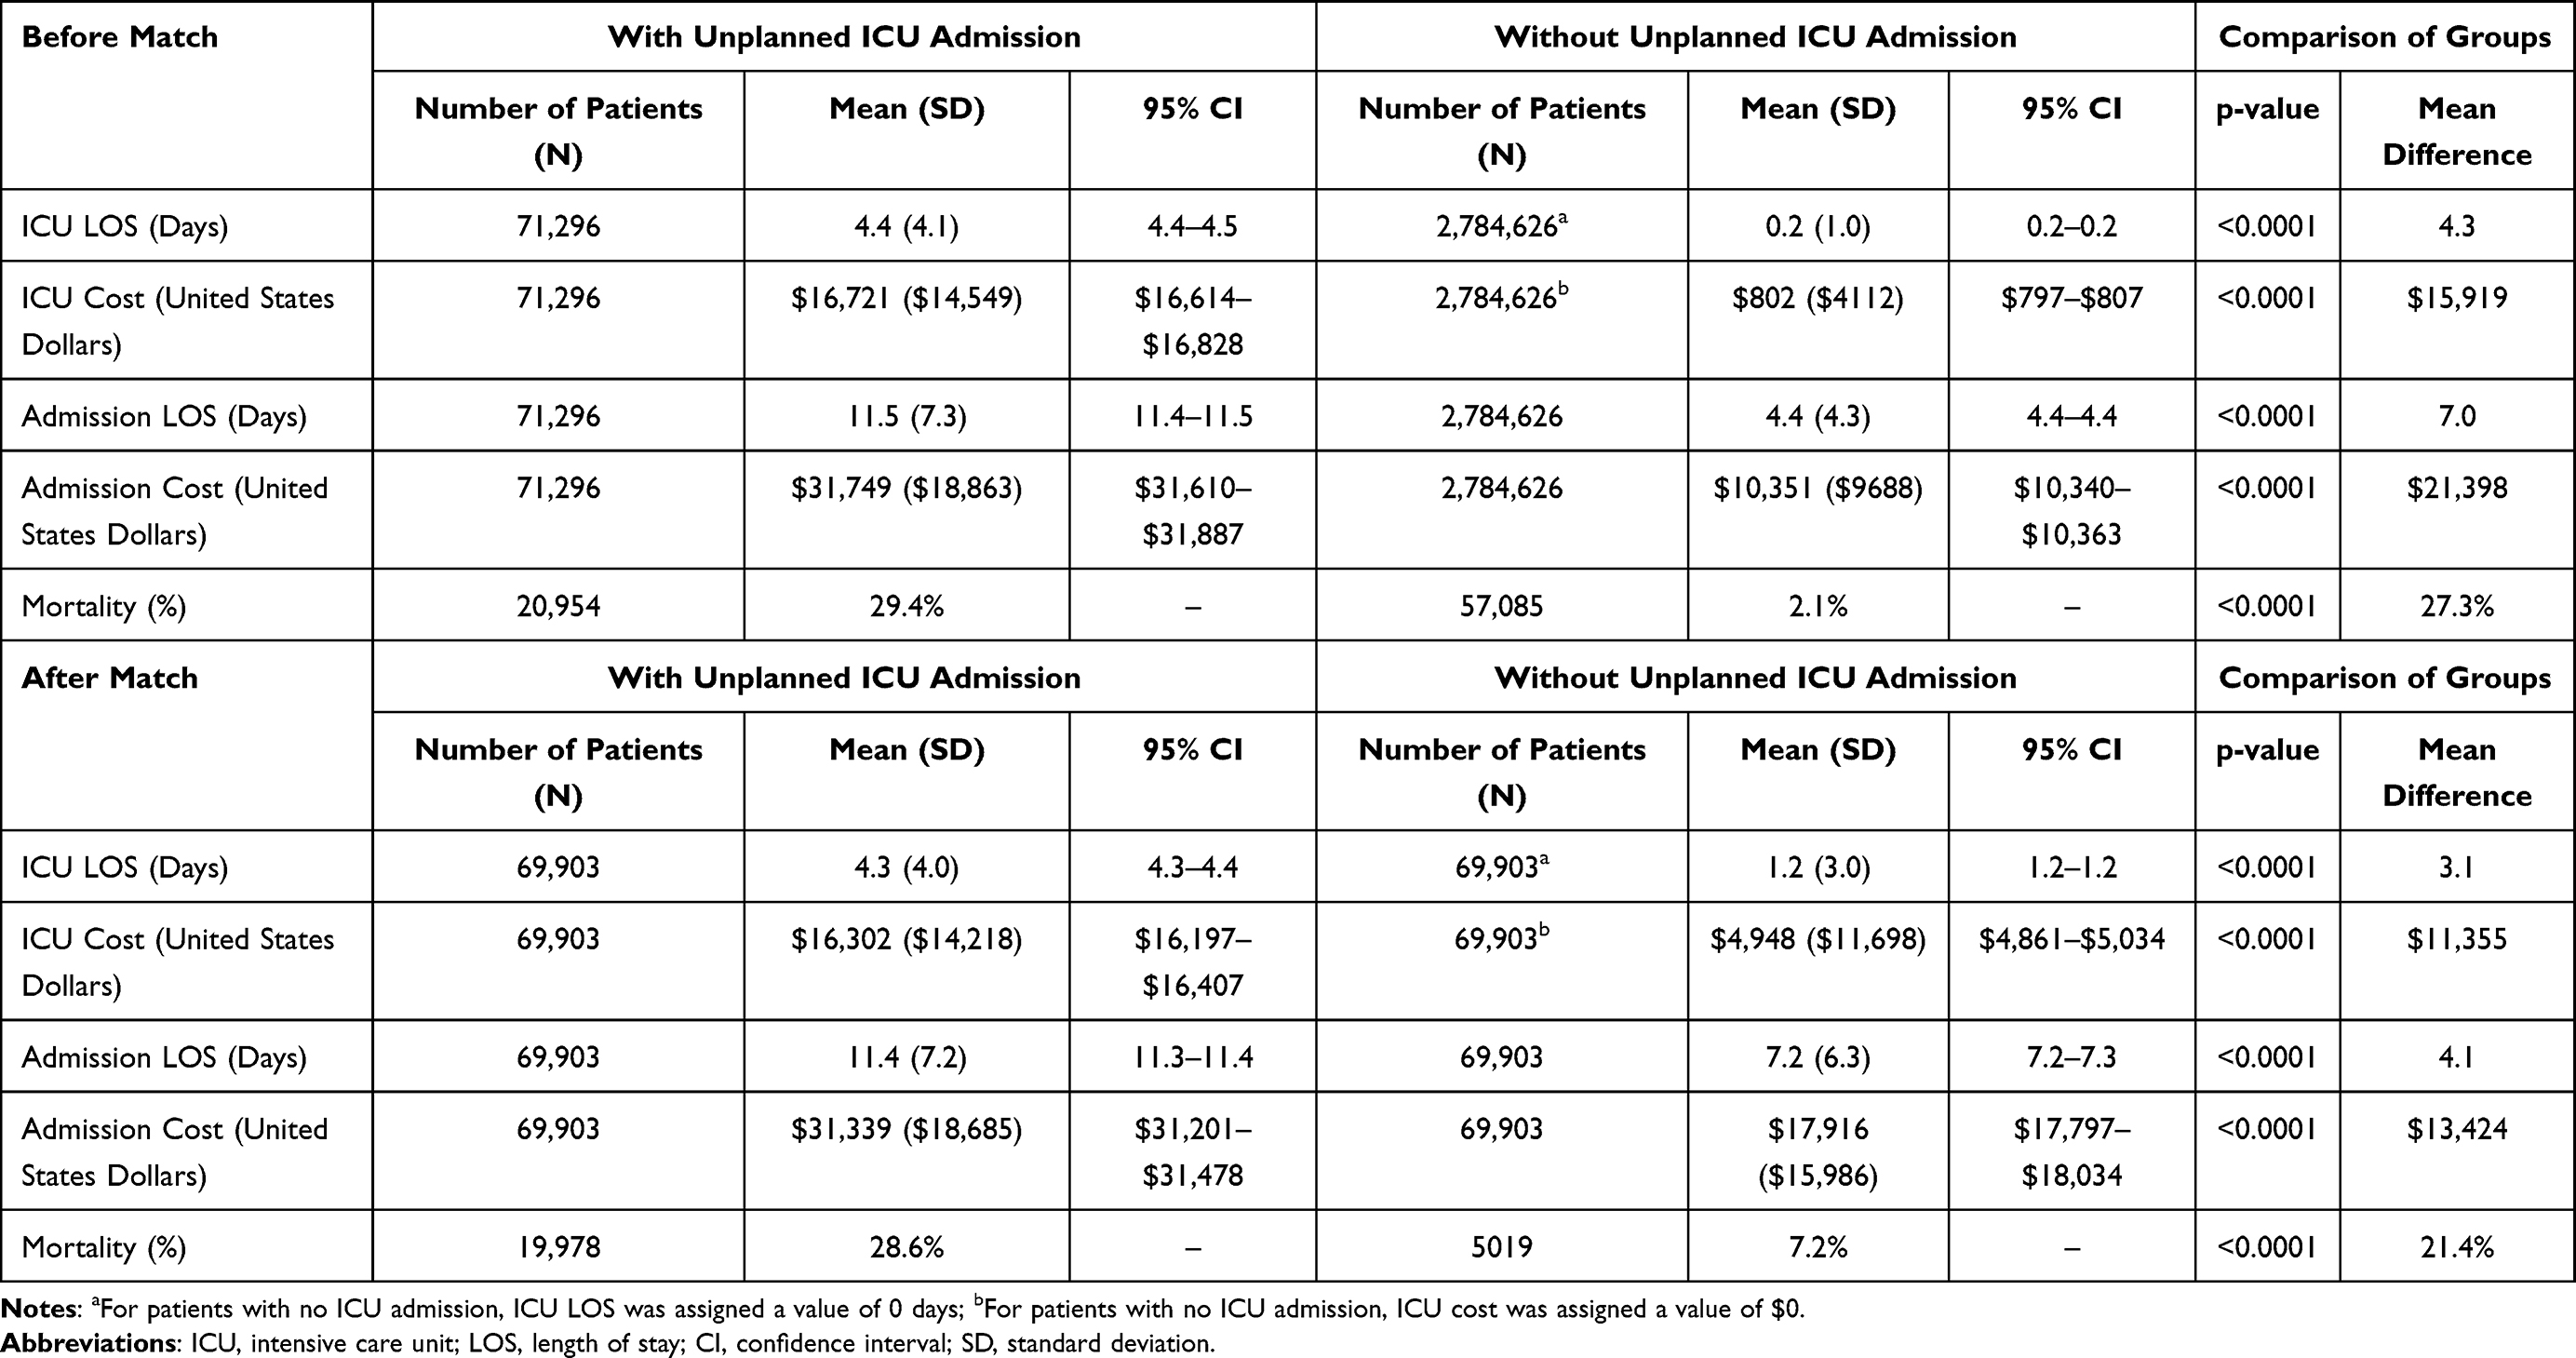 PDF) Comparison of Unplanned Intensive Care Unit Readmission Scores: A  Prospective Cohort Study